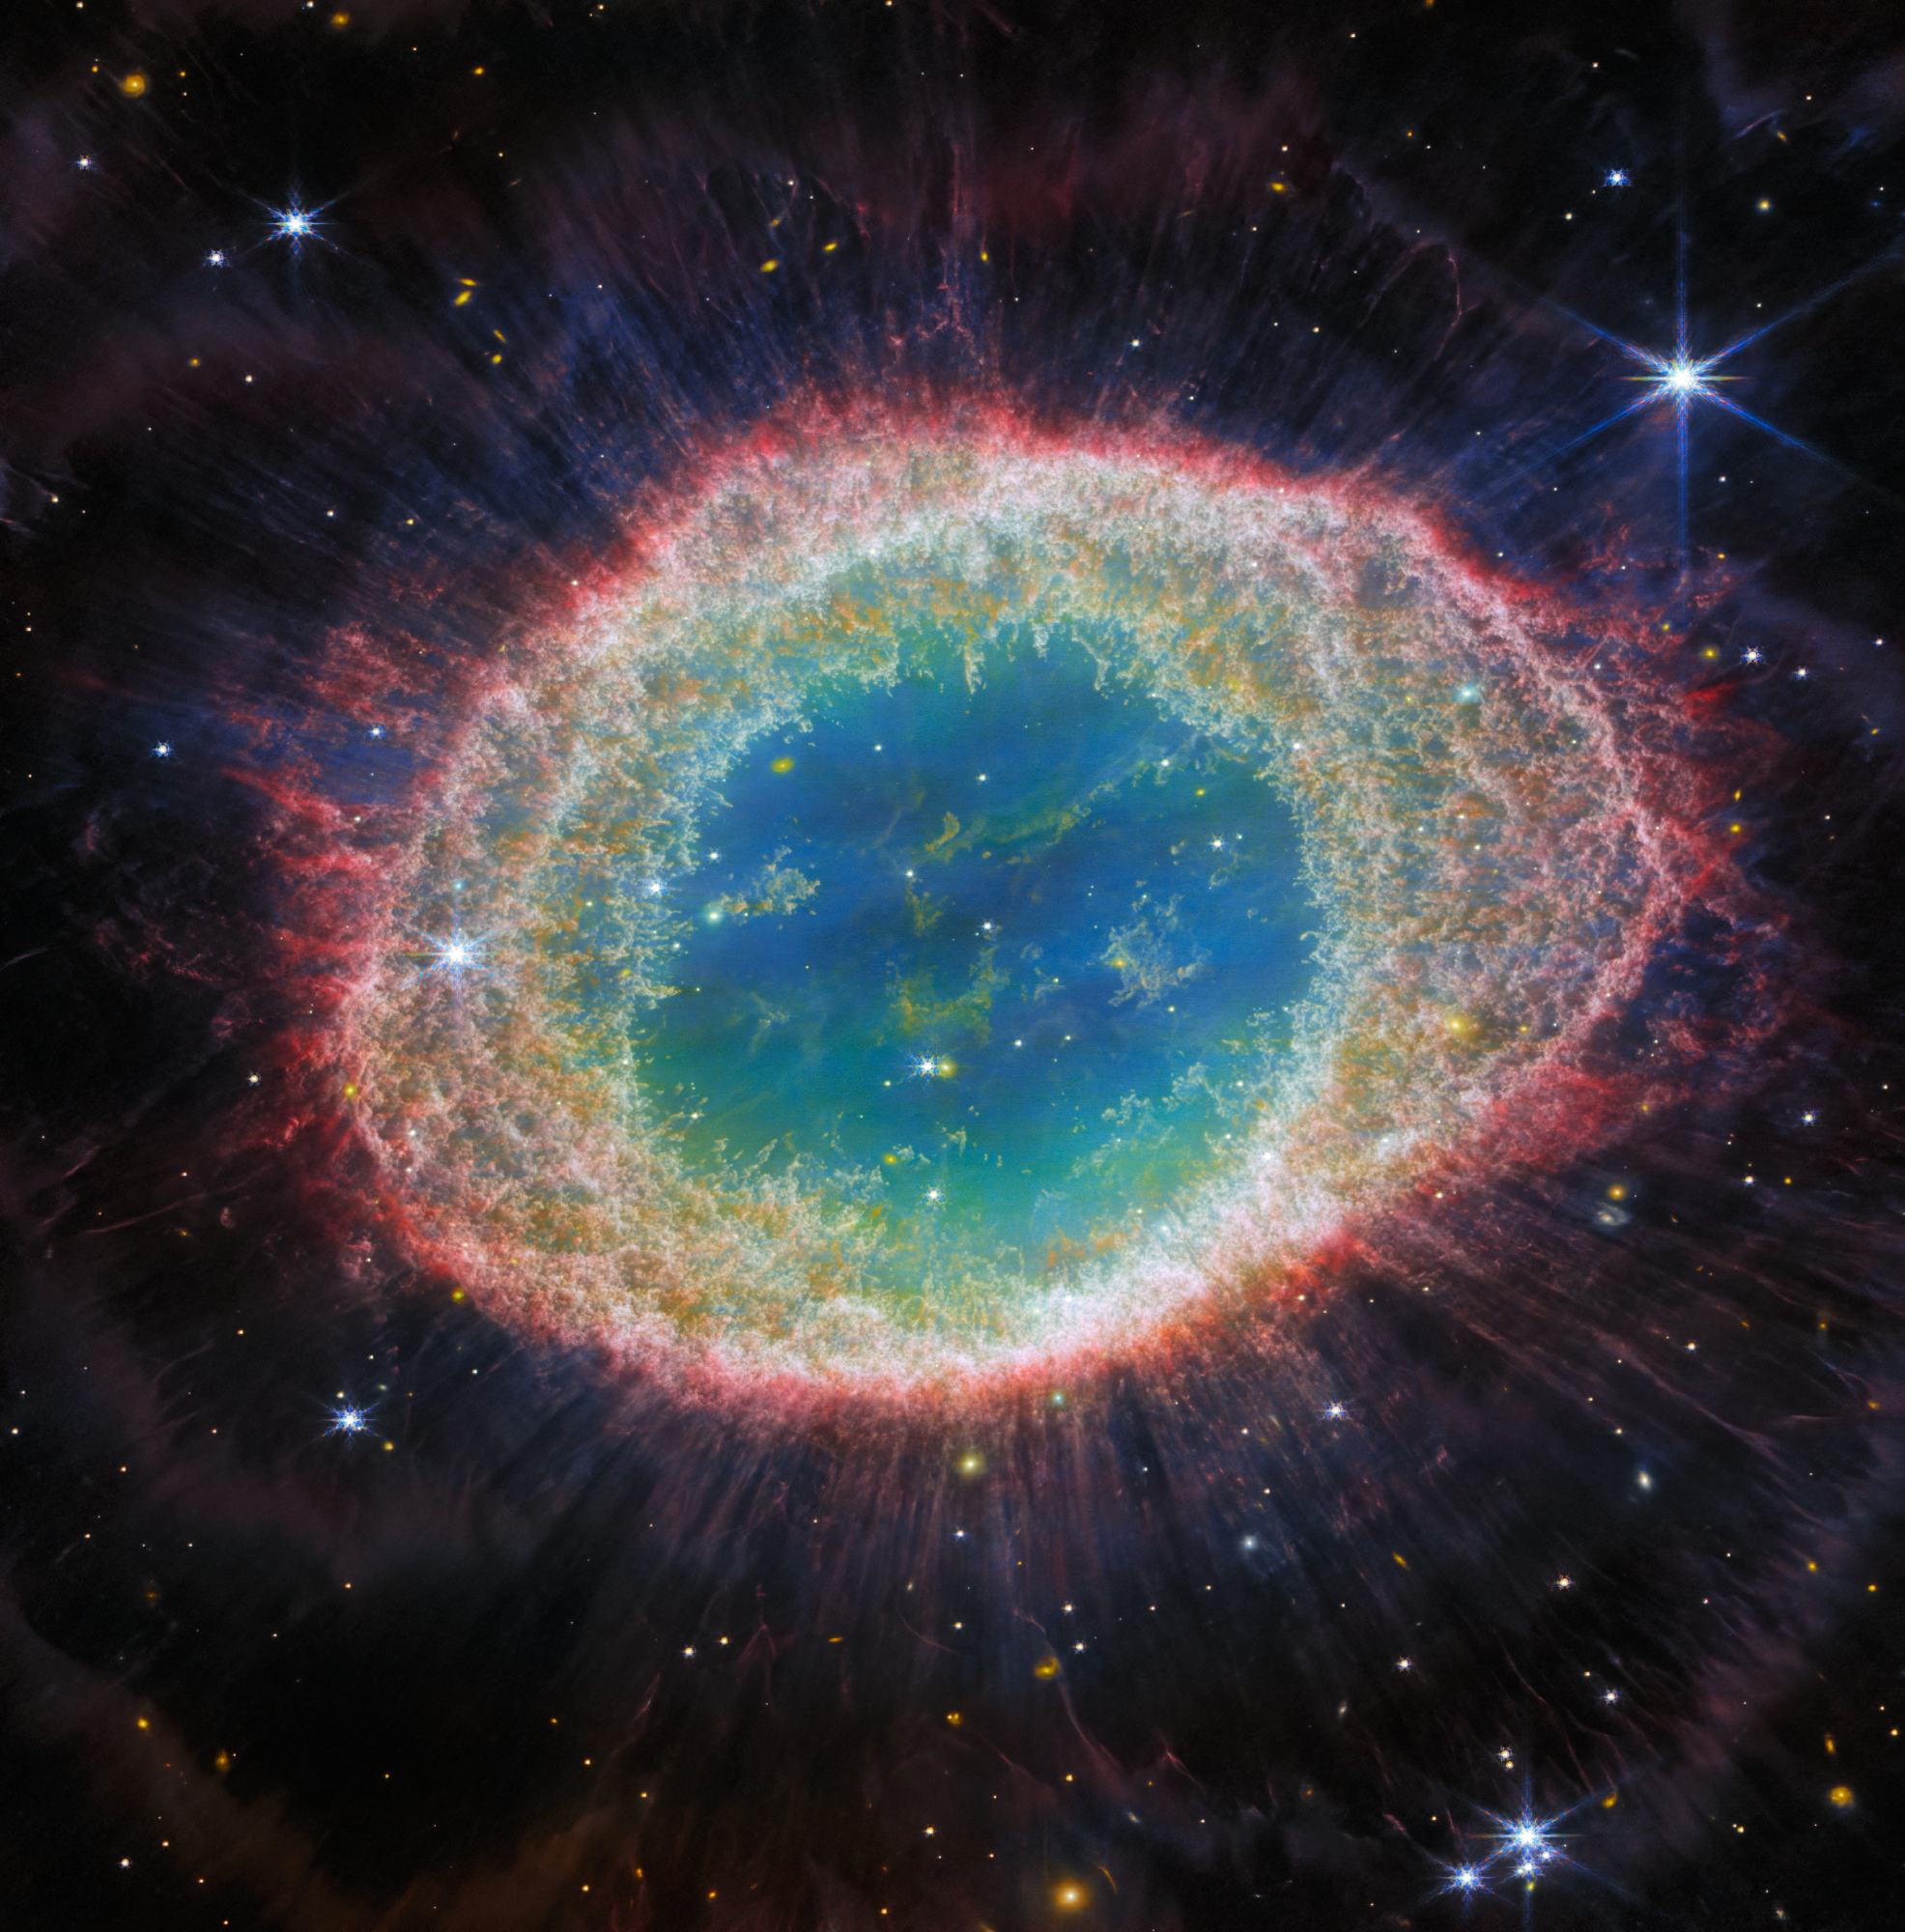 Na ilustracji: Zdjęcie ikonicznej Mgławicy Pierścień (M57, NGC 6720) wykonane przez Teleskop Webba współpracujący z kamerą NIRCam (Near-Infrared Camera) o bezprecedensowej szczegółowości. Mgławica Pierścień jest archetypem mgławicy planetarnej, która powstała, gdy zaawansowana wiekiem gwiazda odrzuciła otoczkę z powodu braku paliwa jądrowego. Na tym zdjęciu  w bliskiej podczerwieni szczególnie dobrze widać misterną strukturę włókien wewnętrznego pierścienia. Widać około 20 tysięcy gęstych globuli bogatych w molekularny wodór. W przeciwieństwie do tego, w centralnym obszarze znajduje się bardzo gorący gaz. Główna otoczka  jest delikatnym pierścieniem, w którym intensywnie świecą molekuły zawierające węgiel – takie jak np. wielopierścieniowe węglowodory aromatyczne PAH. Źródło: ESA/Webb, NASA, CSA, M. Barlow (University College London), N. Cox (ACRI-ST), R. Wesson (Cardiff University